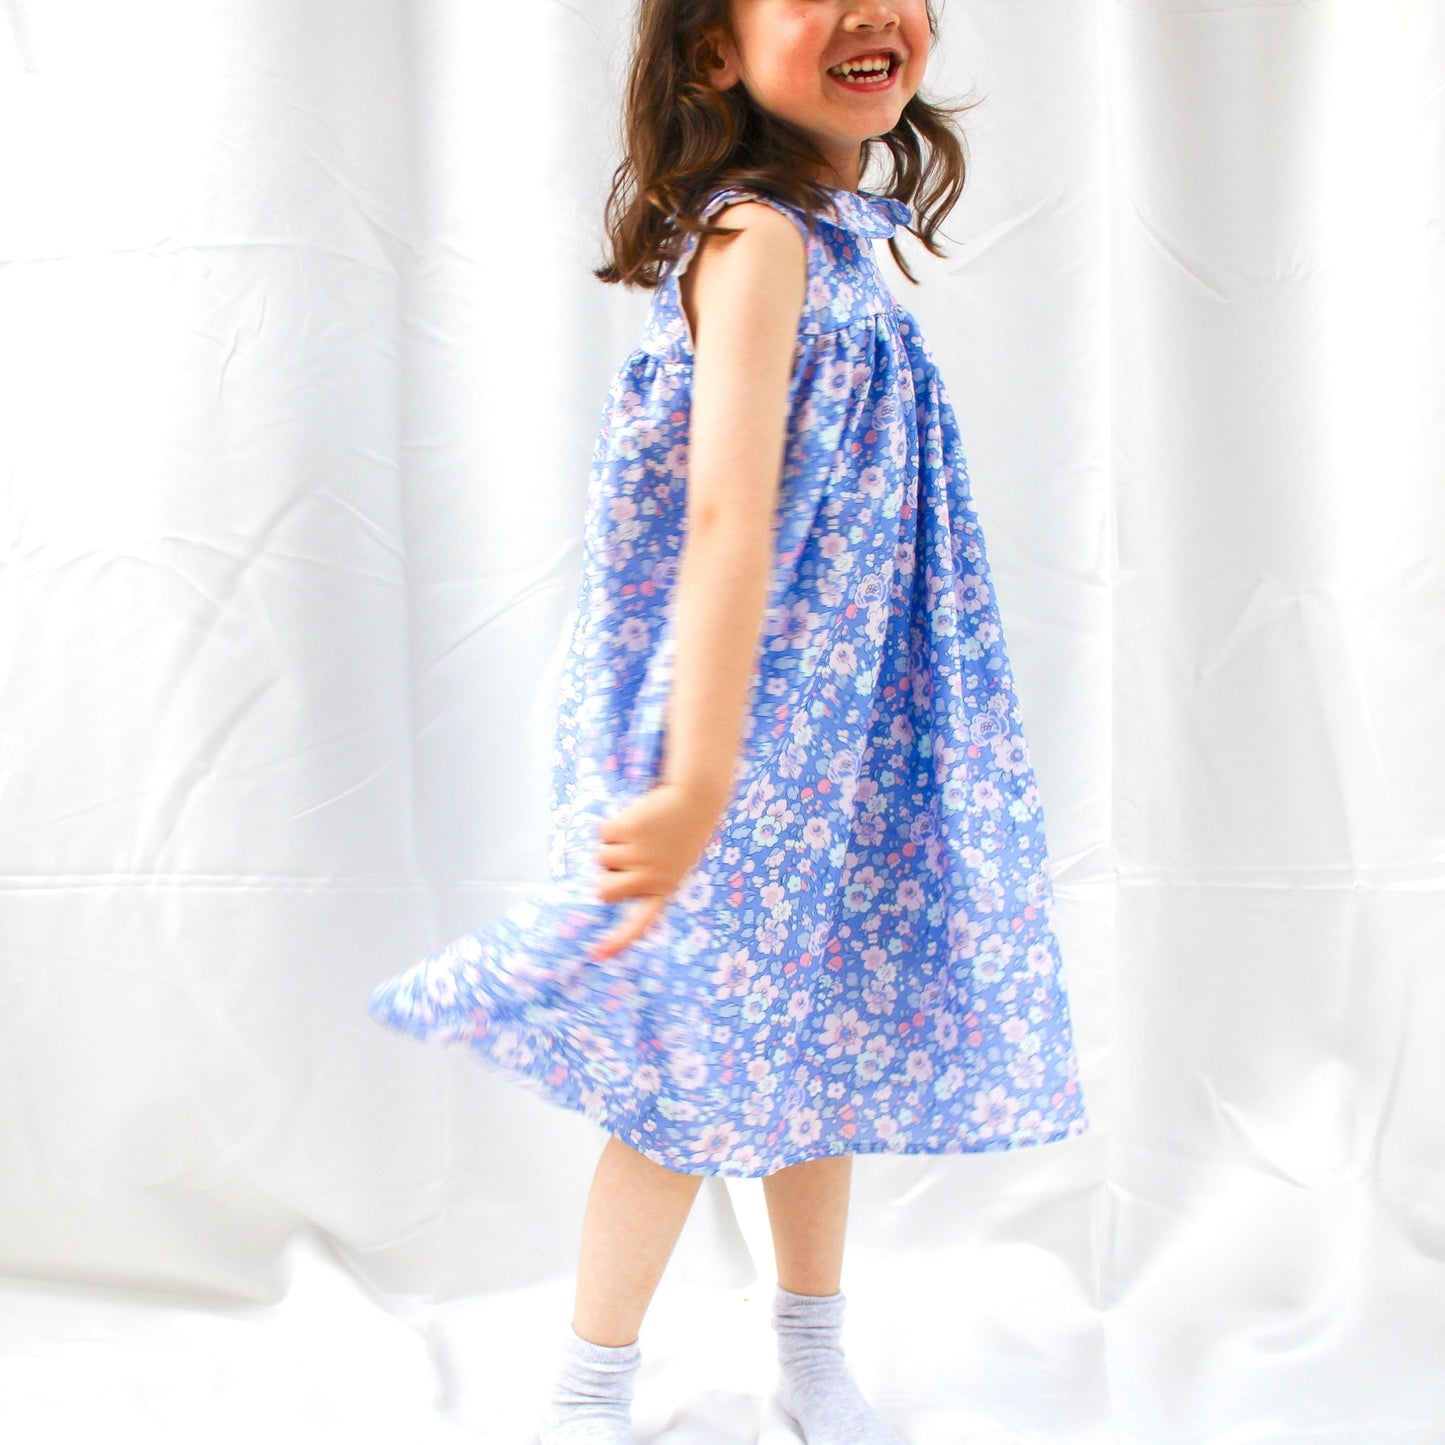 Peter Pan Collar Dress - Liberty of London baby girl dress - Floral Print Girl Dress